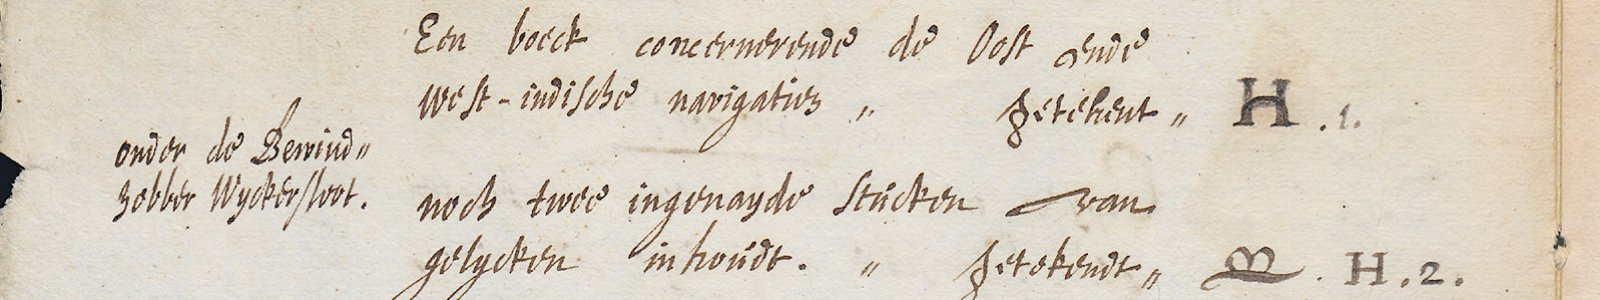 Uitsnede uit fol. 1v uit Handschrift 1831 uit de Bijzondere Collecties van de Universiteitsbibliotheek Utrecht